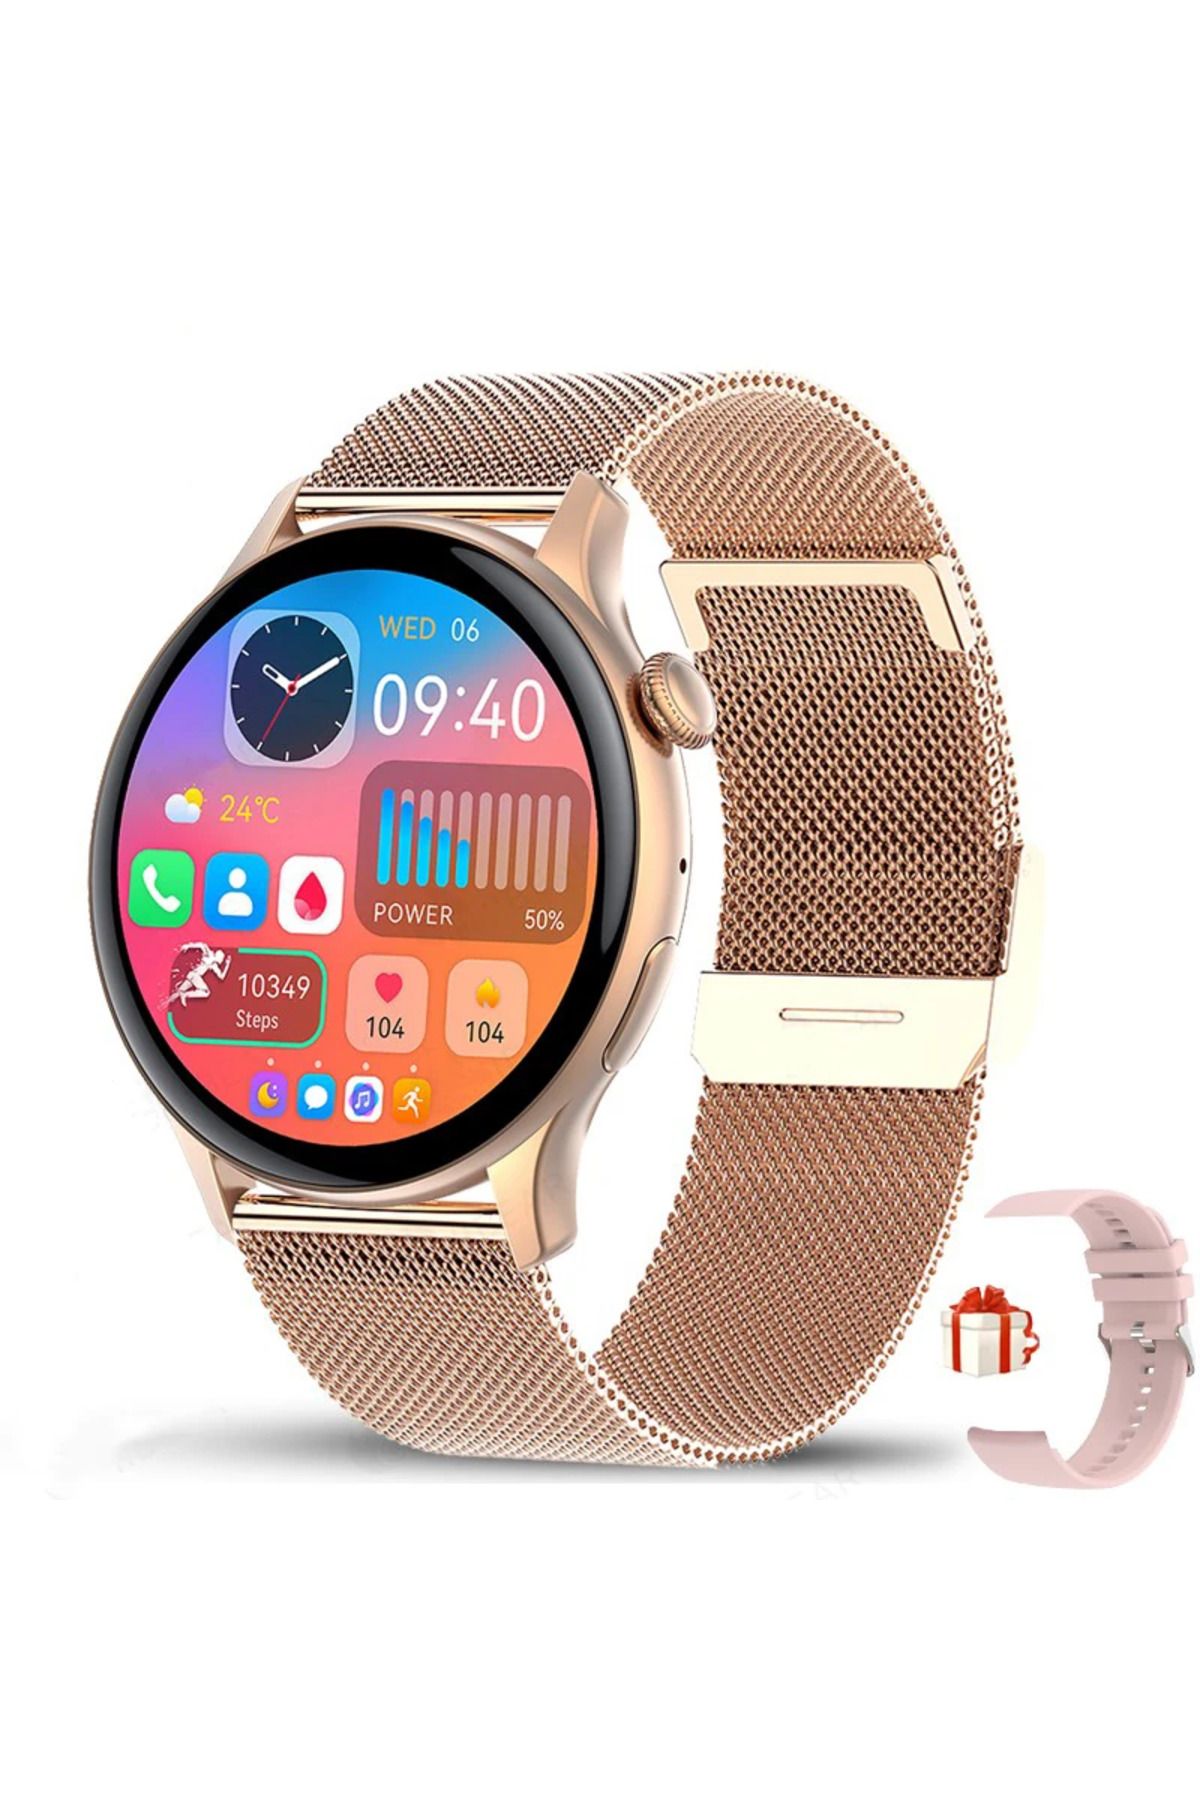 ecocenter Watch G3 Pro Mini 42 Mm Android Ve Ios Tüm Akıllı Telefonlar Ile Uyumlu 2 Kordonlu Akıllı Saat